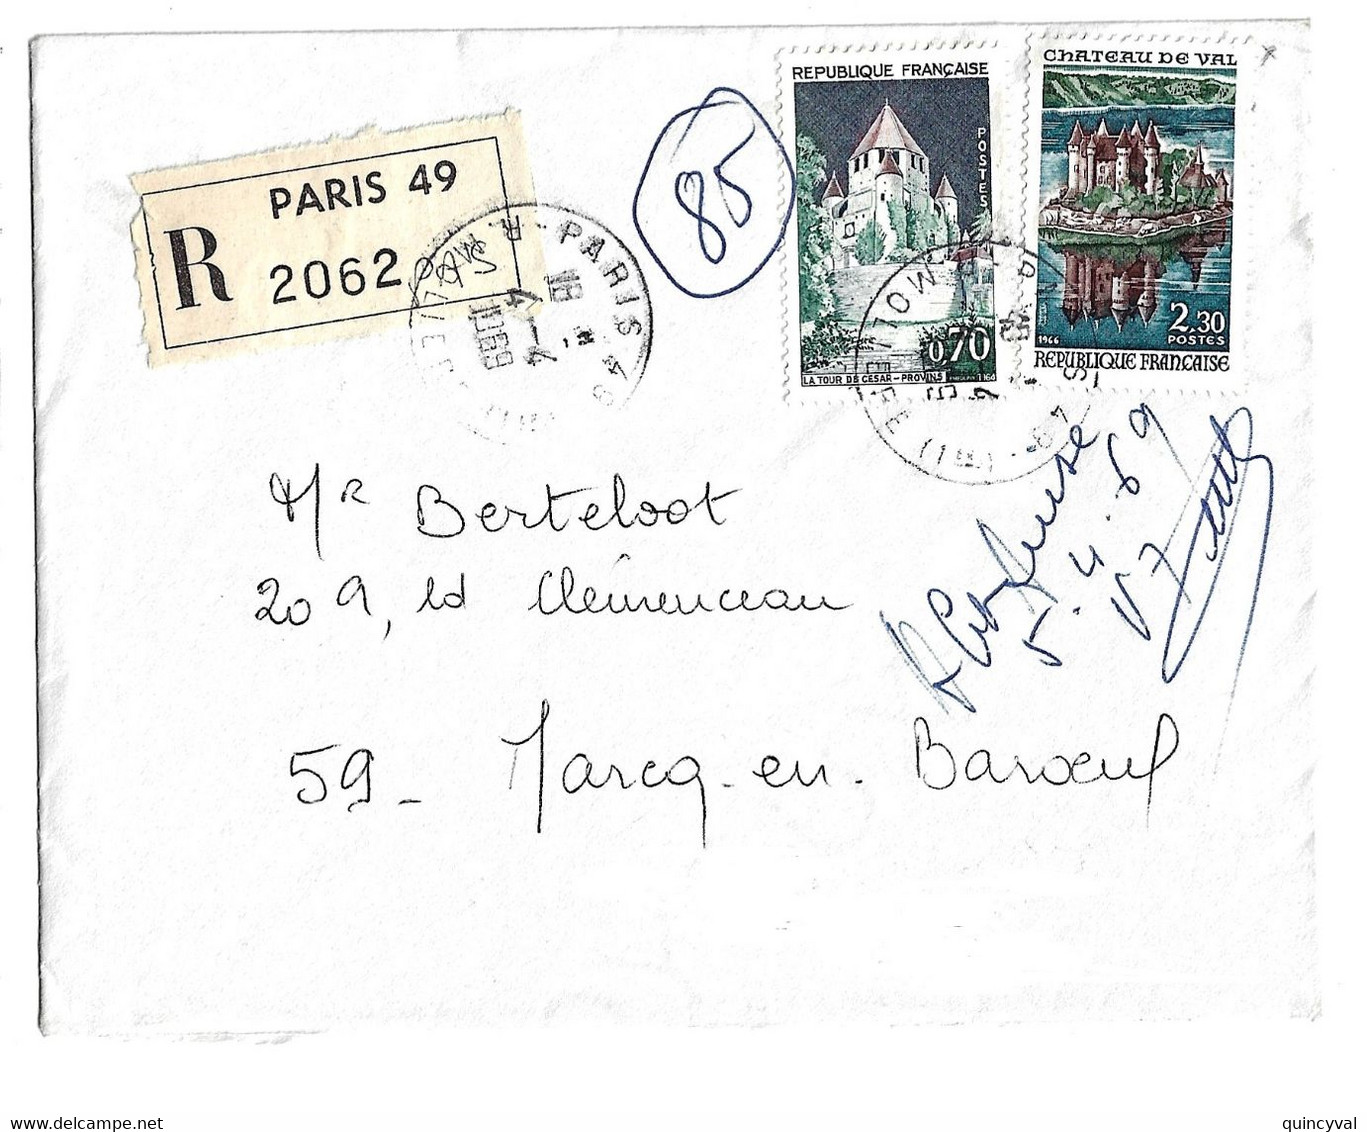 PARIS 48 Lettre Recommandée 70c Provins 2,30 F Château De Val Yv 1426 1540 Ob 4 4 1969 Etiquette Reco - Lettres & Documents